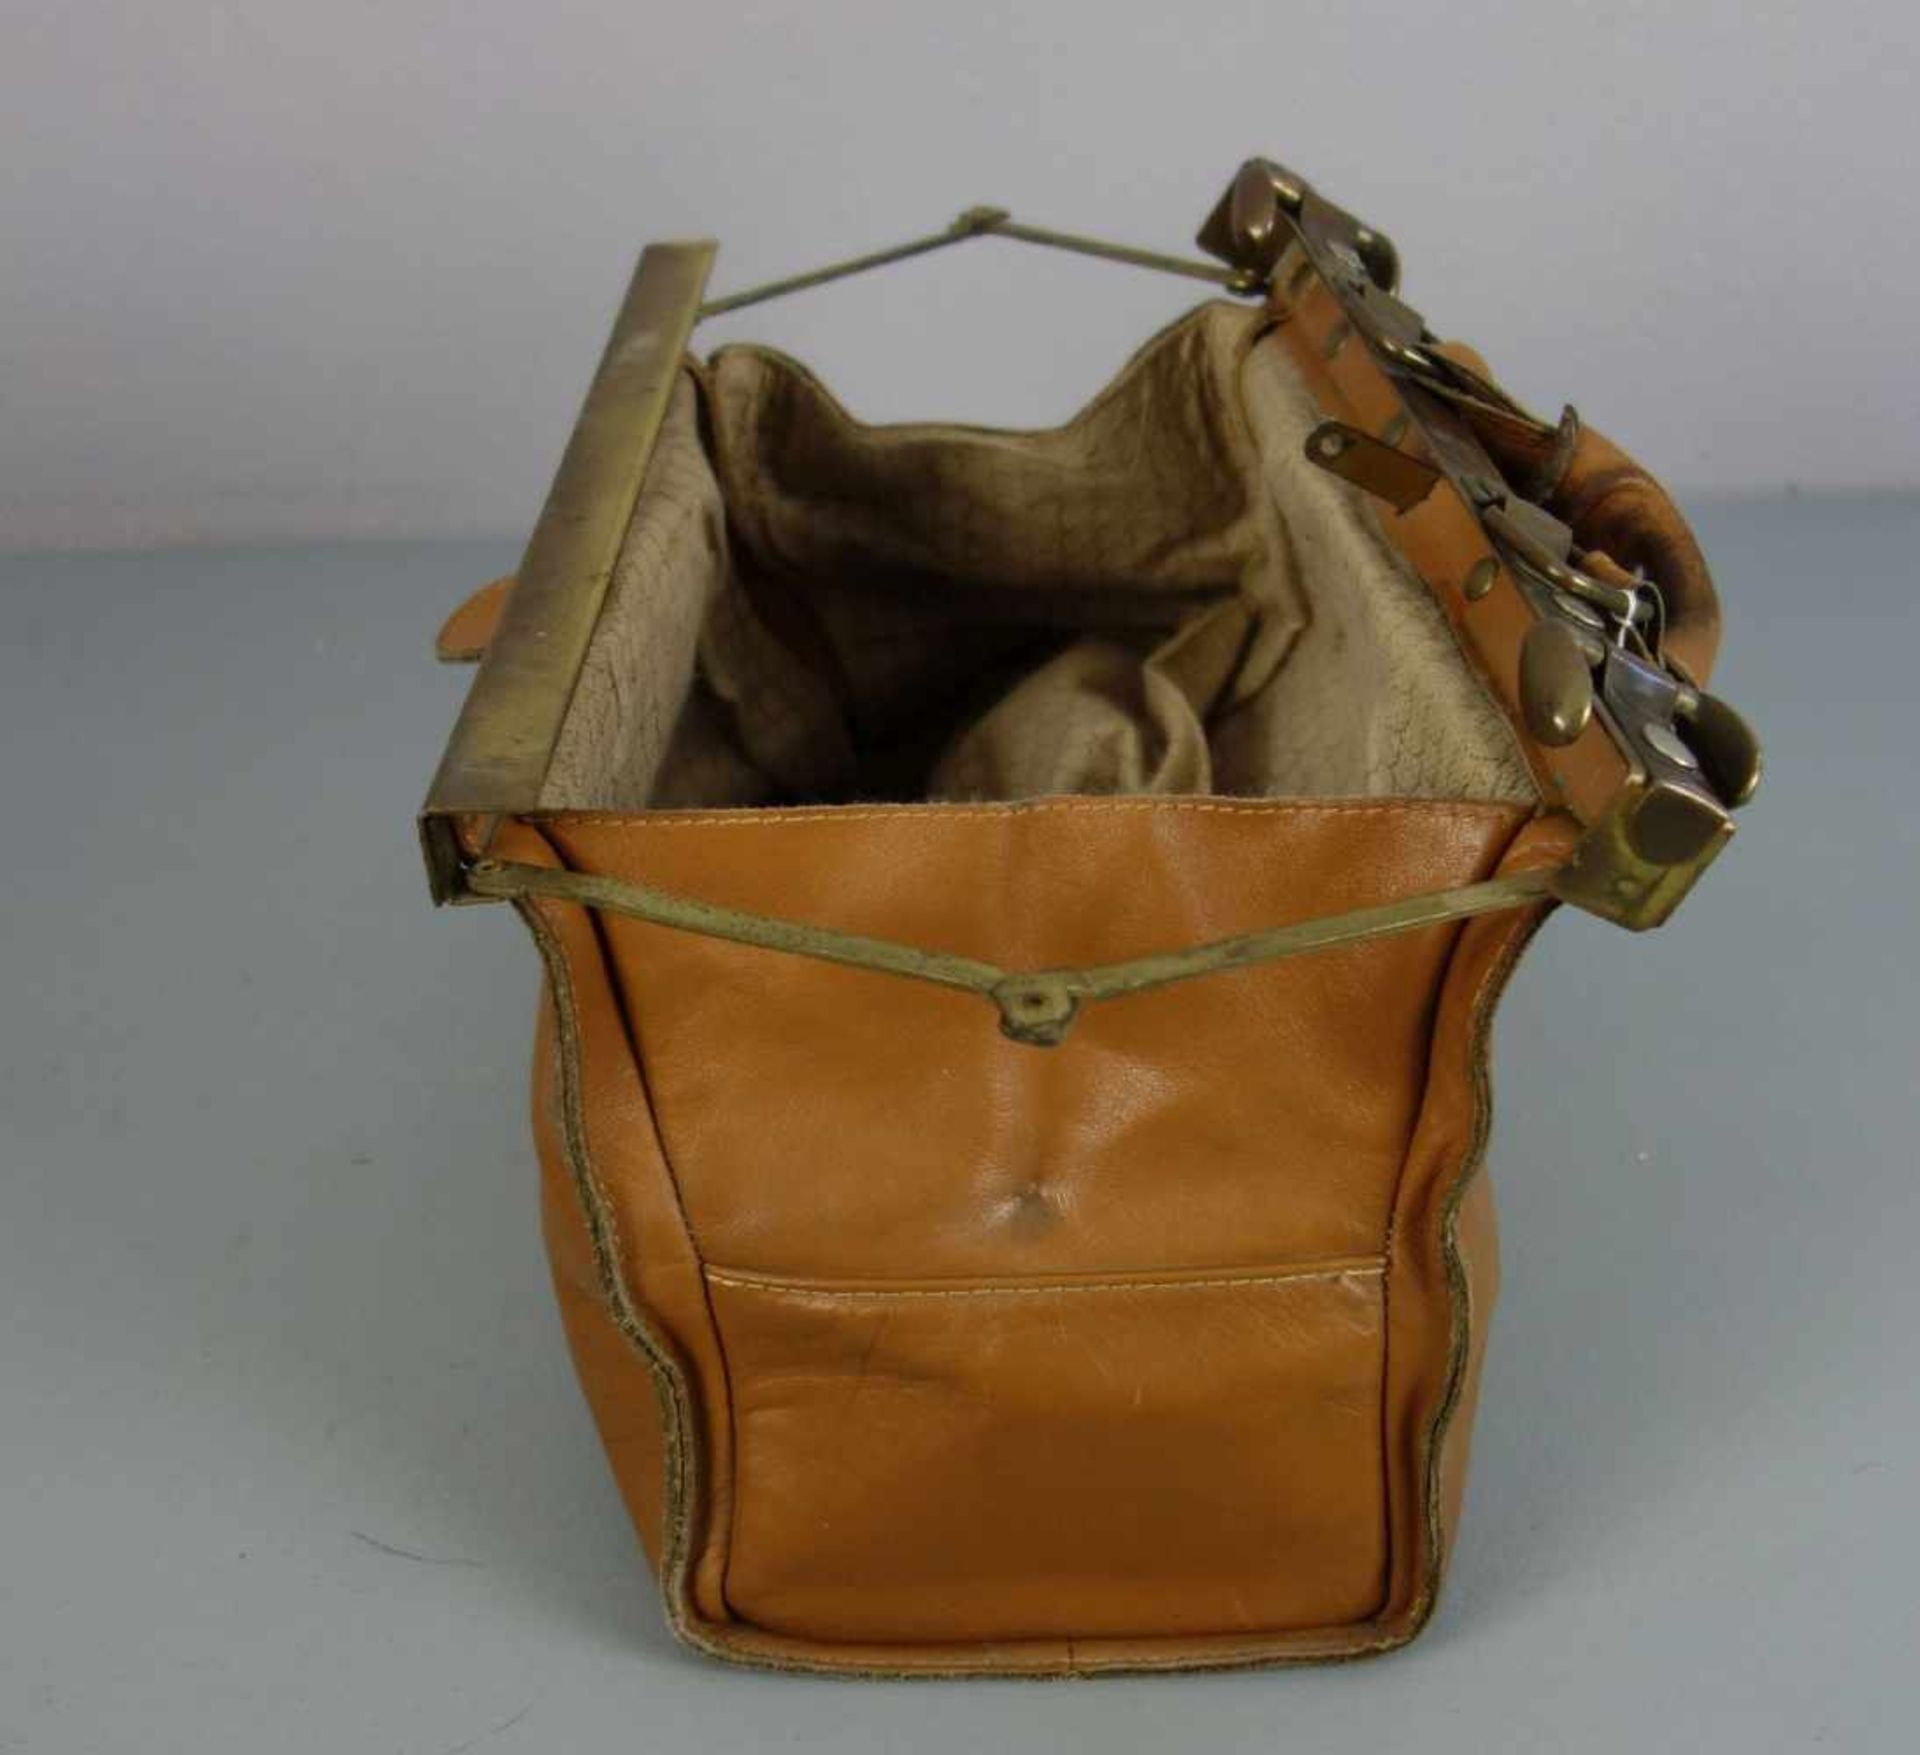 TASCHE / ARZTTASCHE / kleine Reisetasche / bag; cognacfarbenes Leder mit messingfarbenen - Bild 3 aus 4